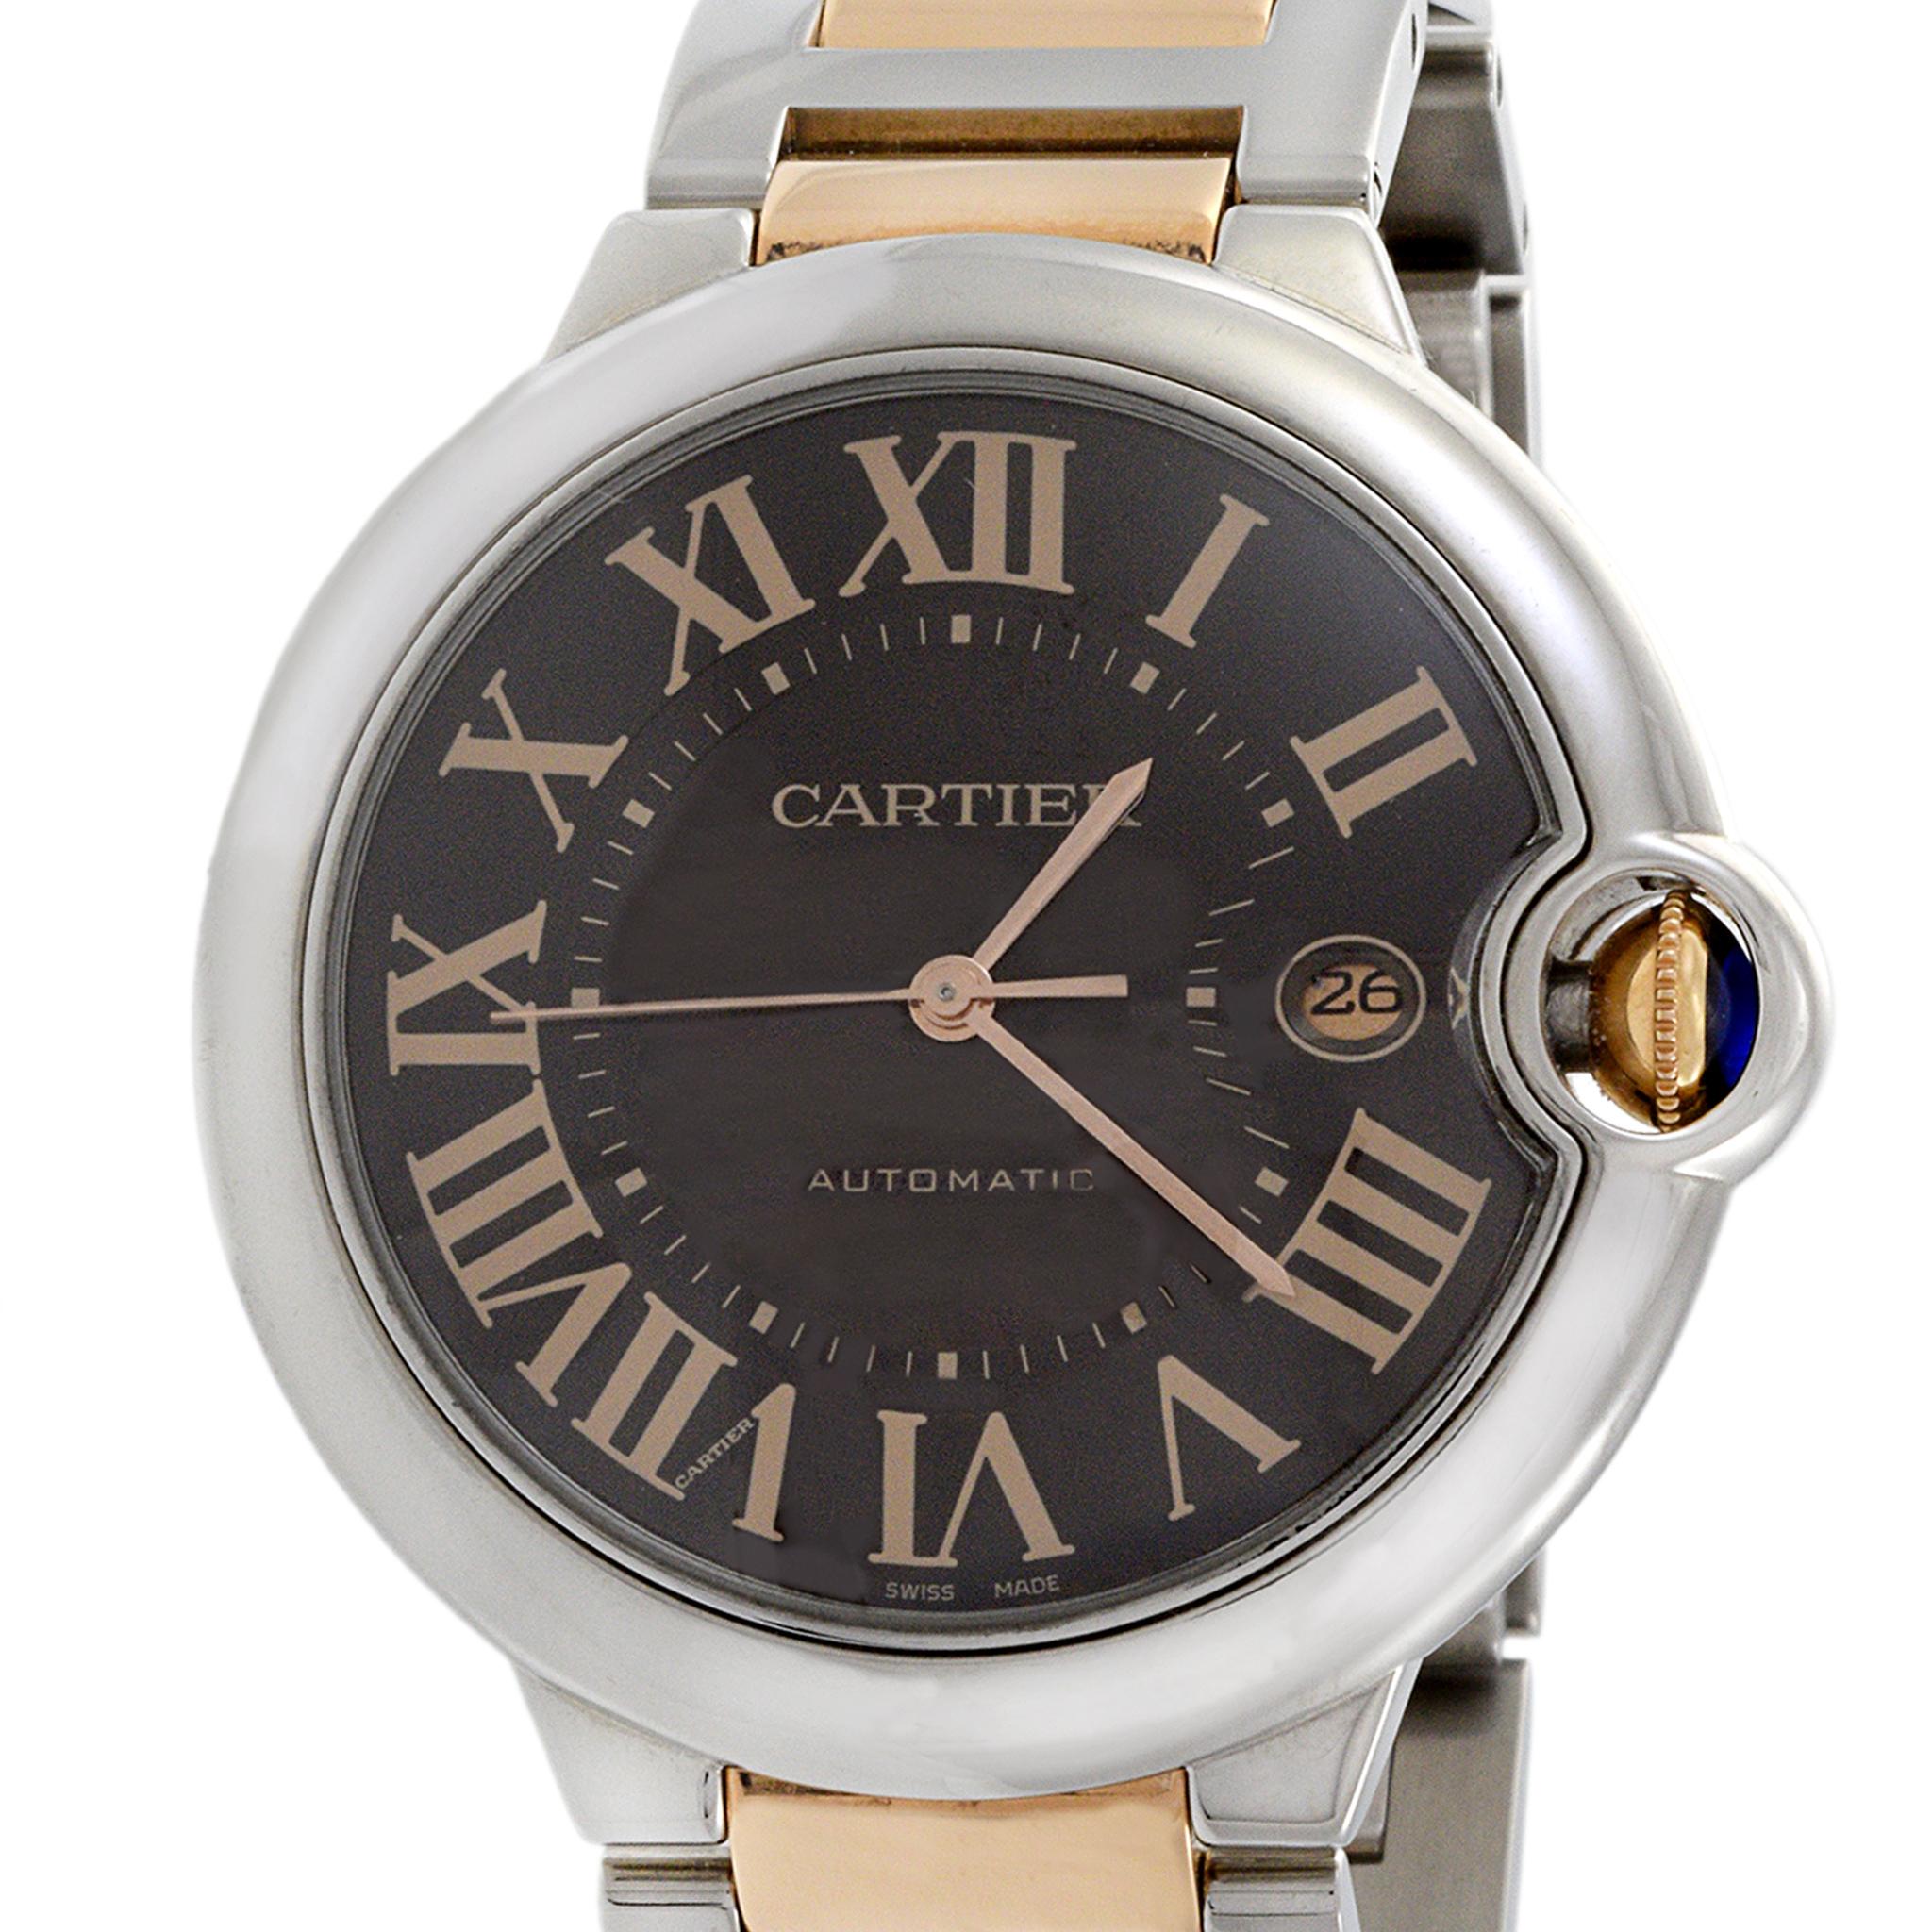 Cartier Ballon Bleu Stahl Rose Gold Braunes Zifferblatt Uhr (Modell W6920032). Dieser exquisite Zeitmesser verbindet nahtlos klassische Eleganz mit moderner Raffinesse. Das runde Edelstahlgehäuse mit einem Durchmesser von 42 mm und einer Dicke von